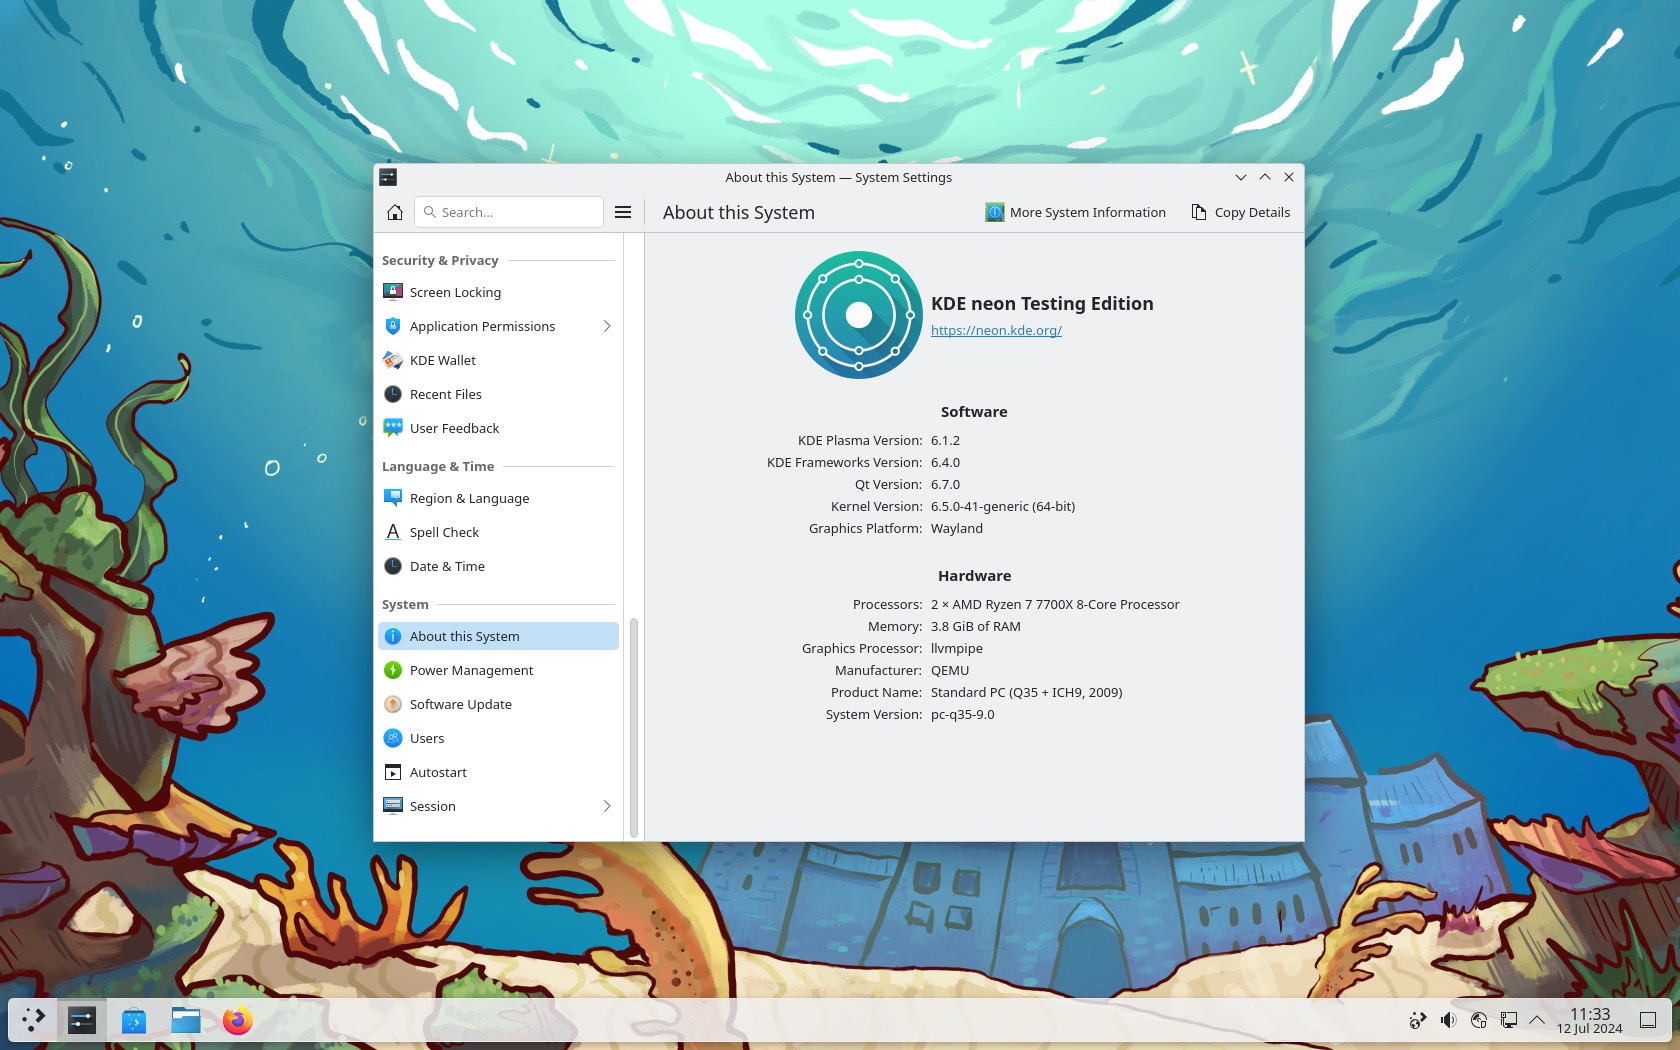 KDE Frameworks 6.4.0